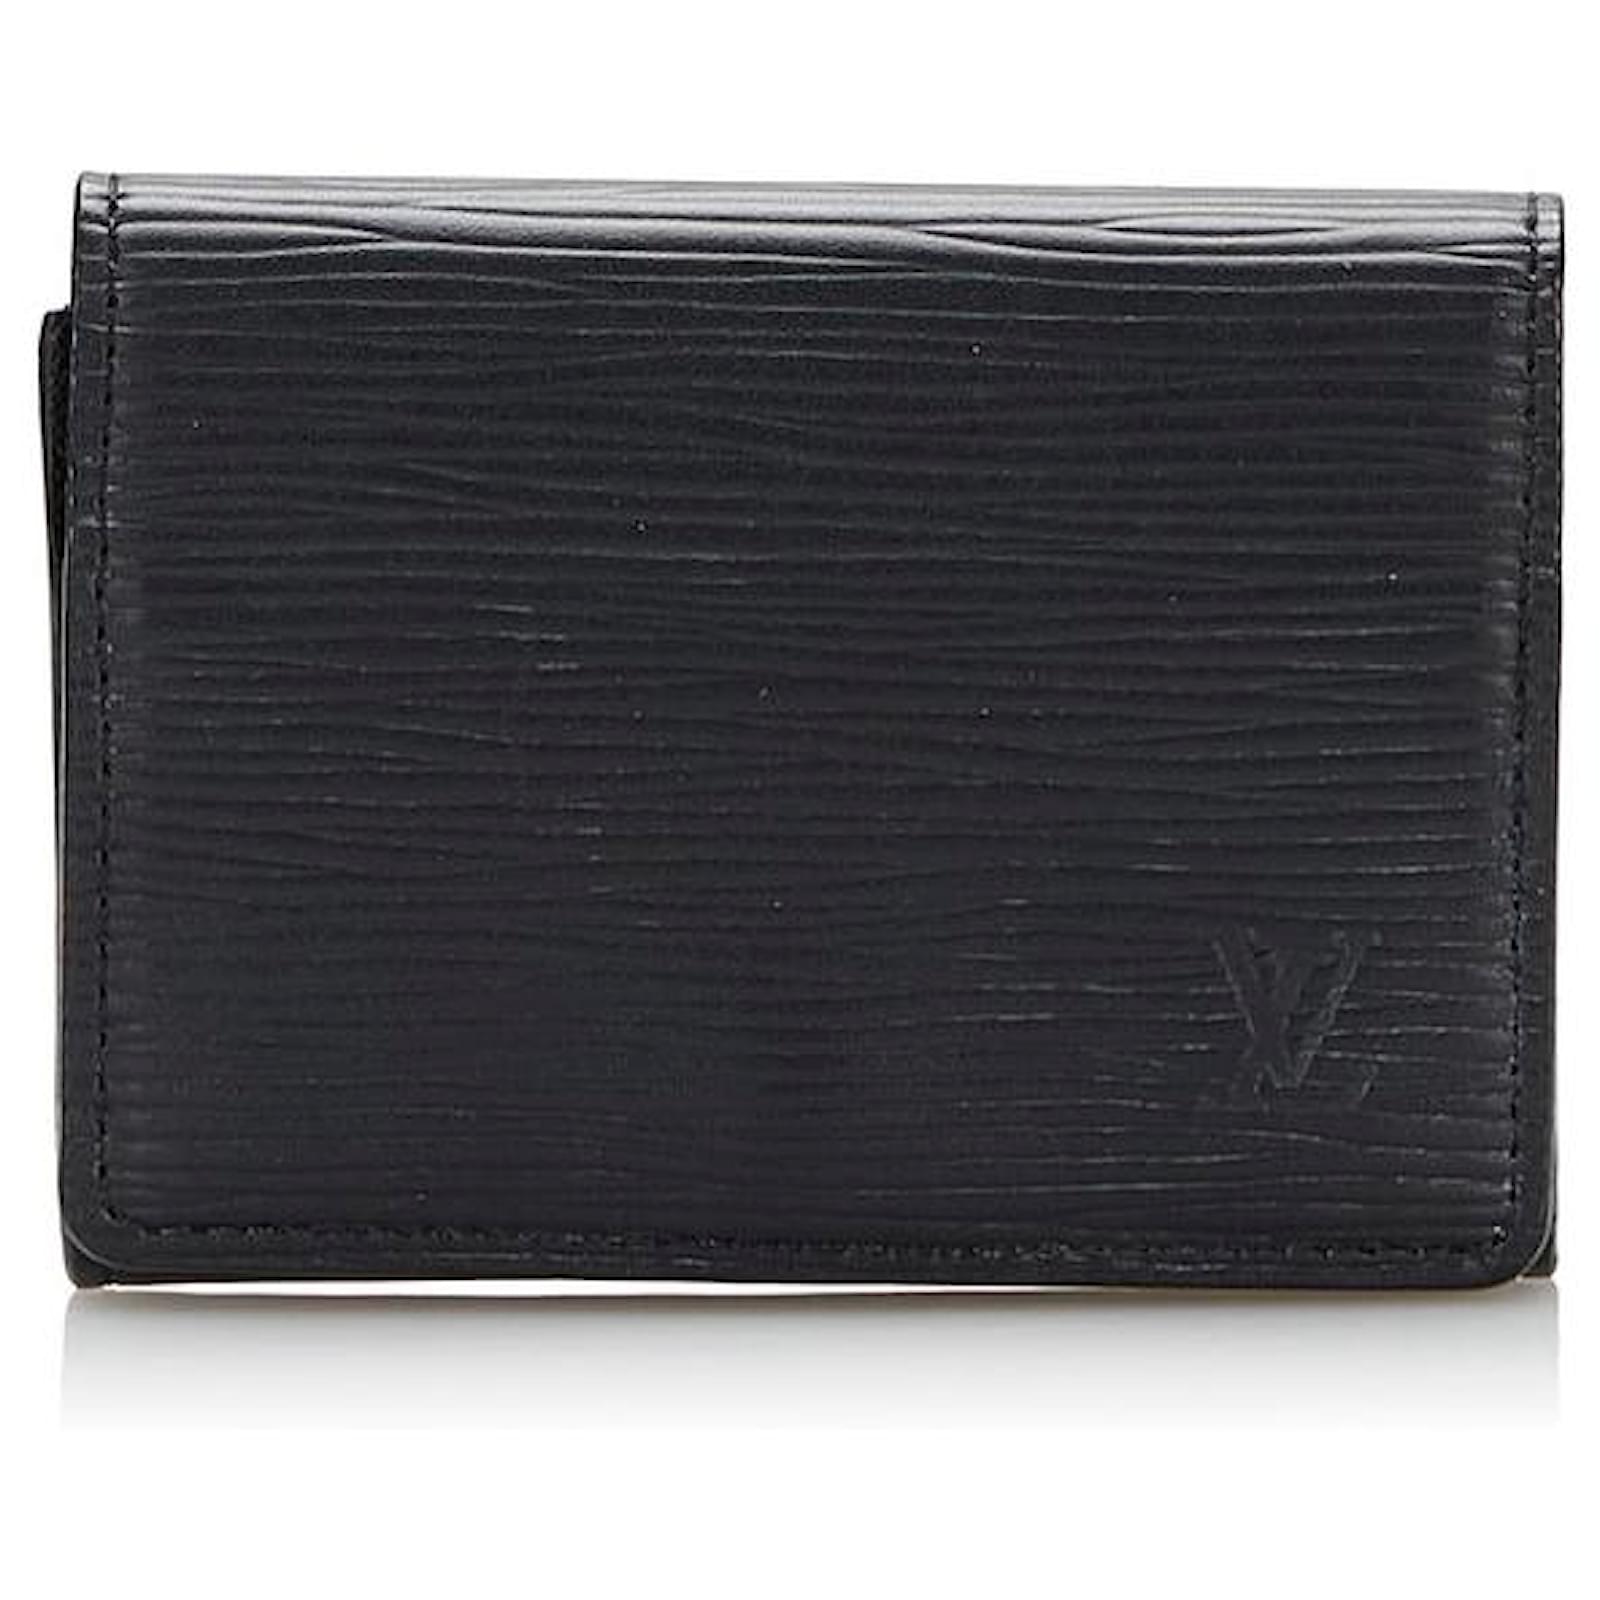 Louis Vuitton Enveloppe Carte de visite, Black, One Size